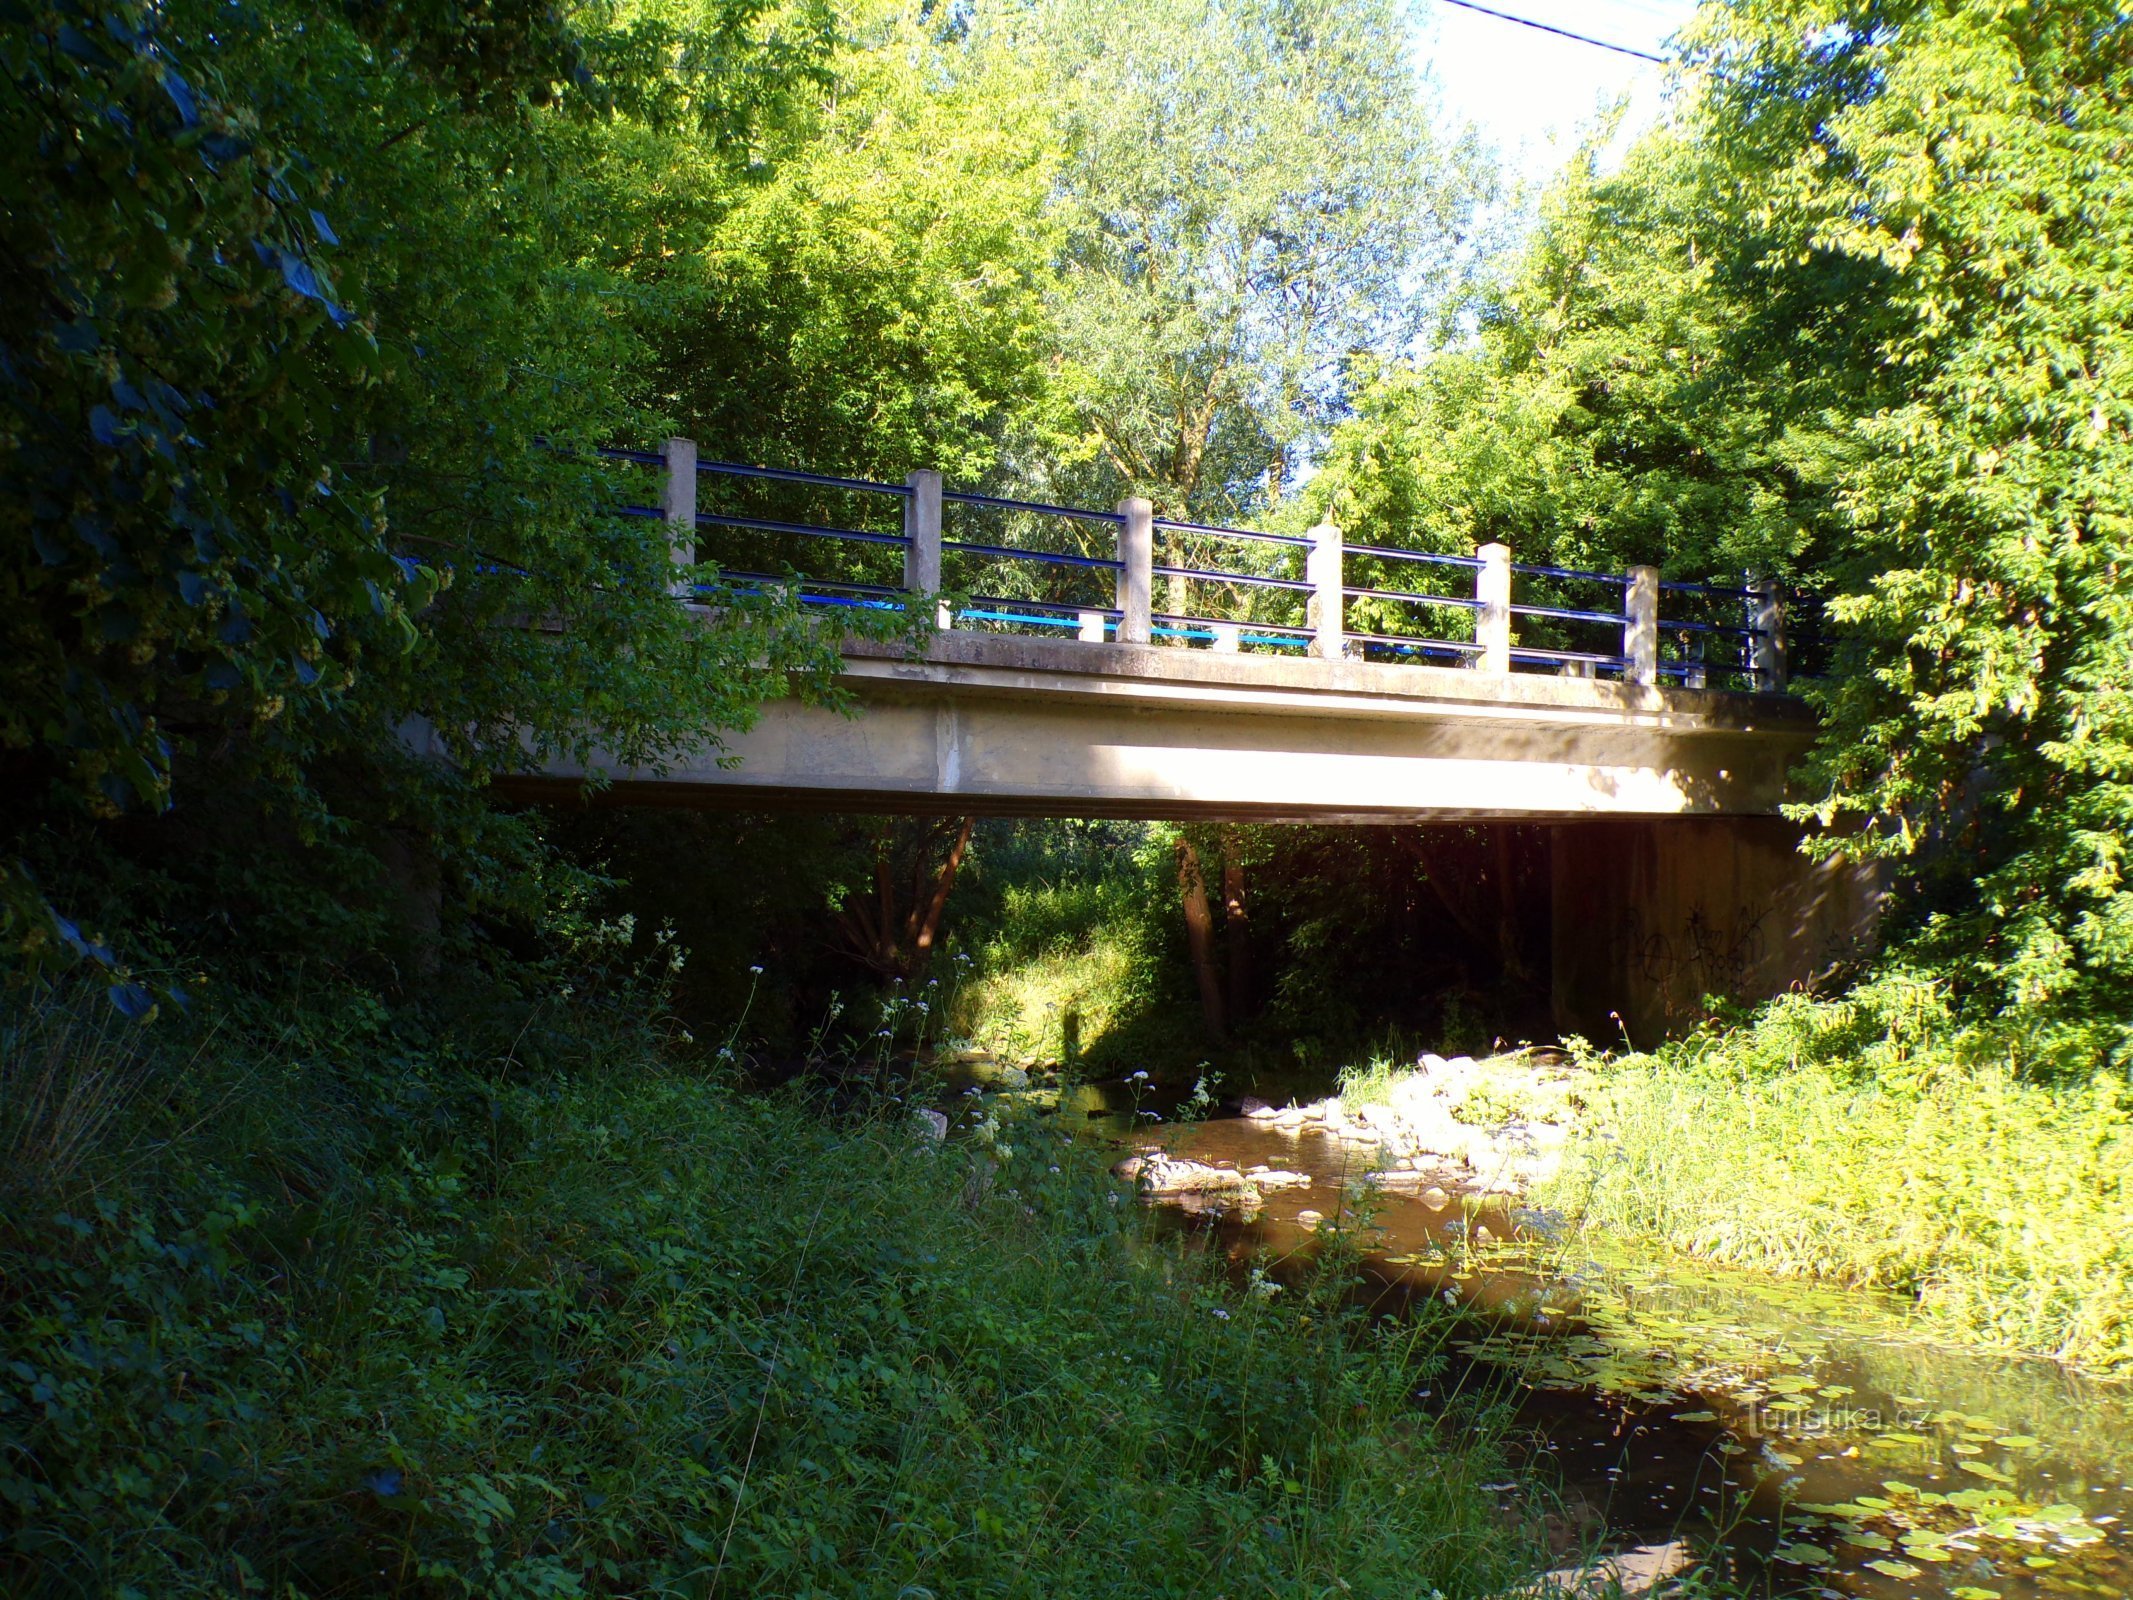 Ponte sobre Dědina de Mitrov a Polánek nad Dědinou (10.7.2022/XNUMX/XNUMX)